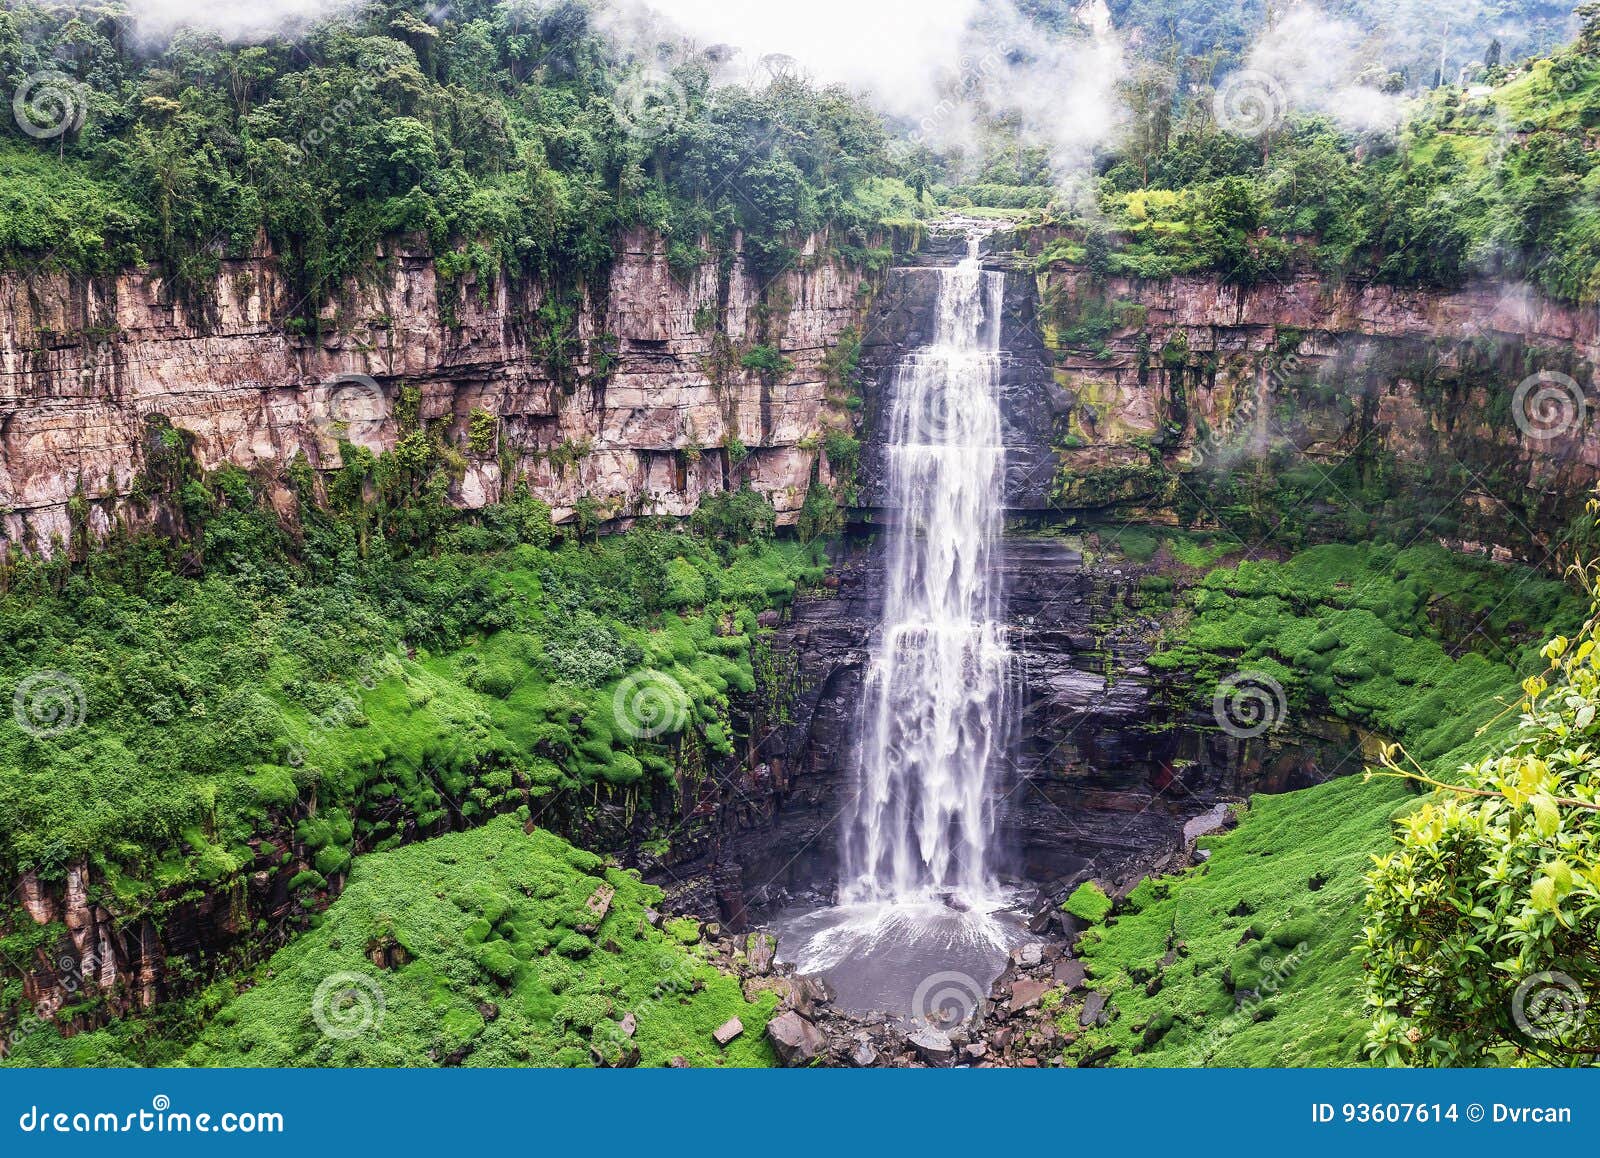 tequendama falls near bogota, colombia